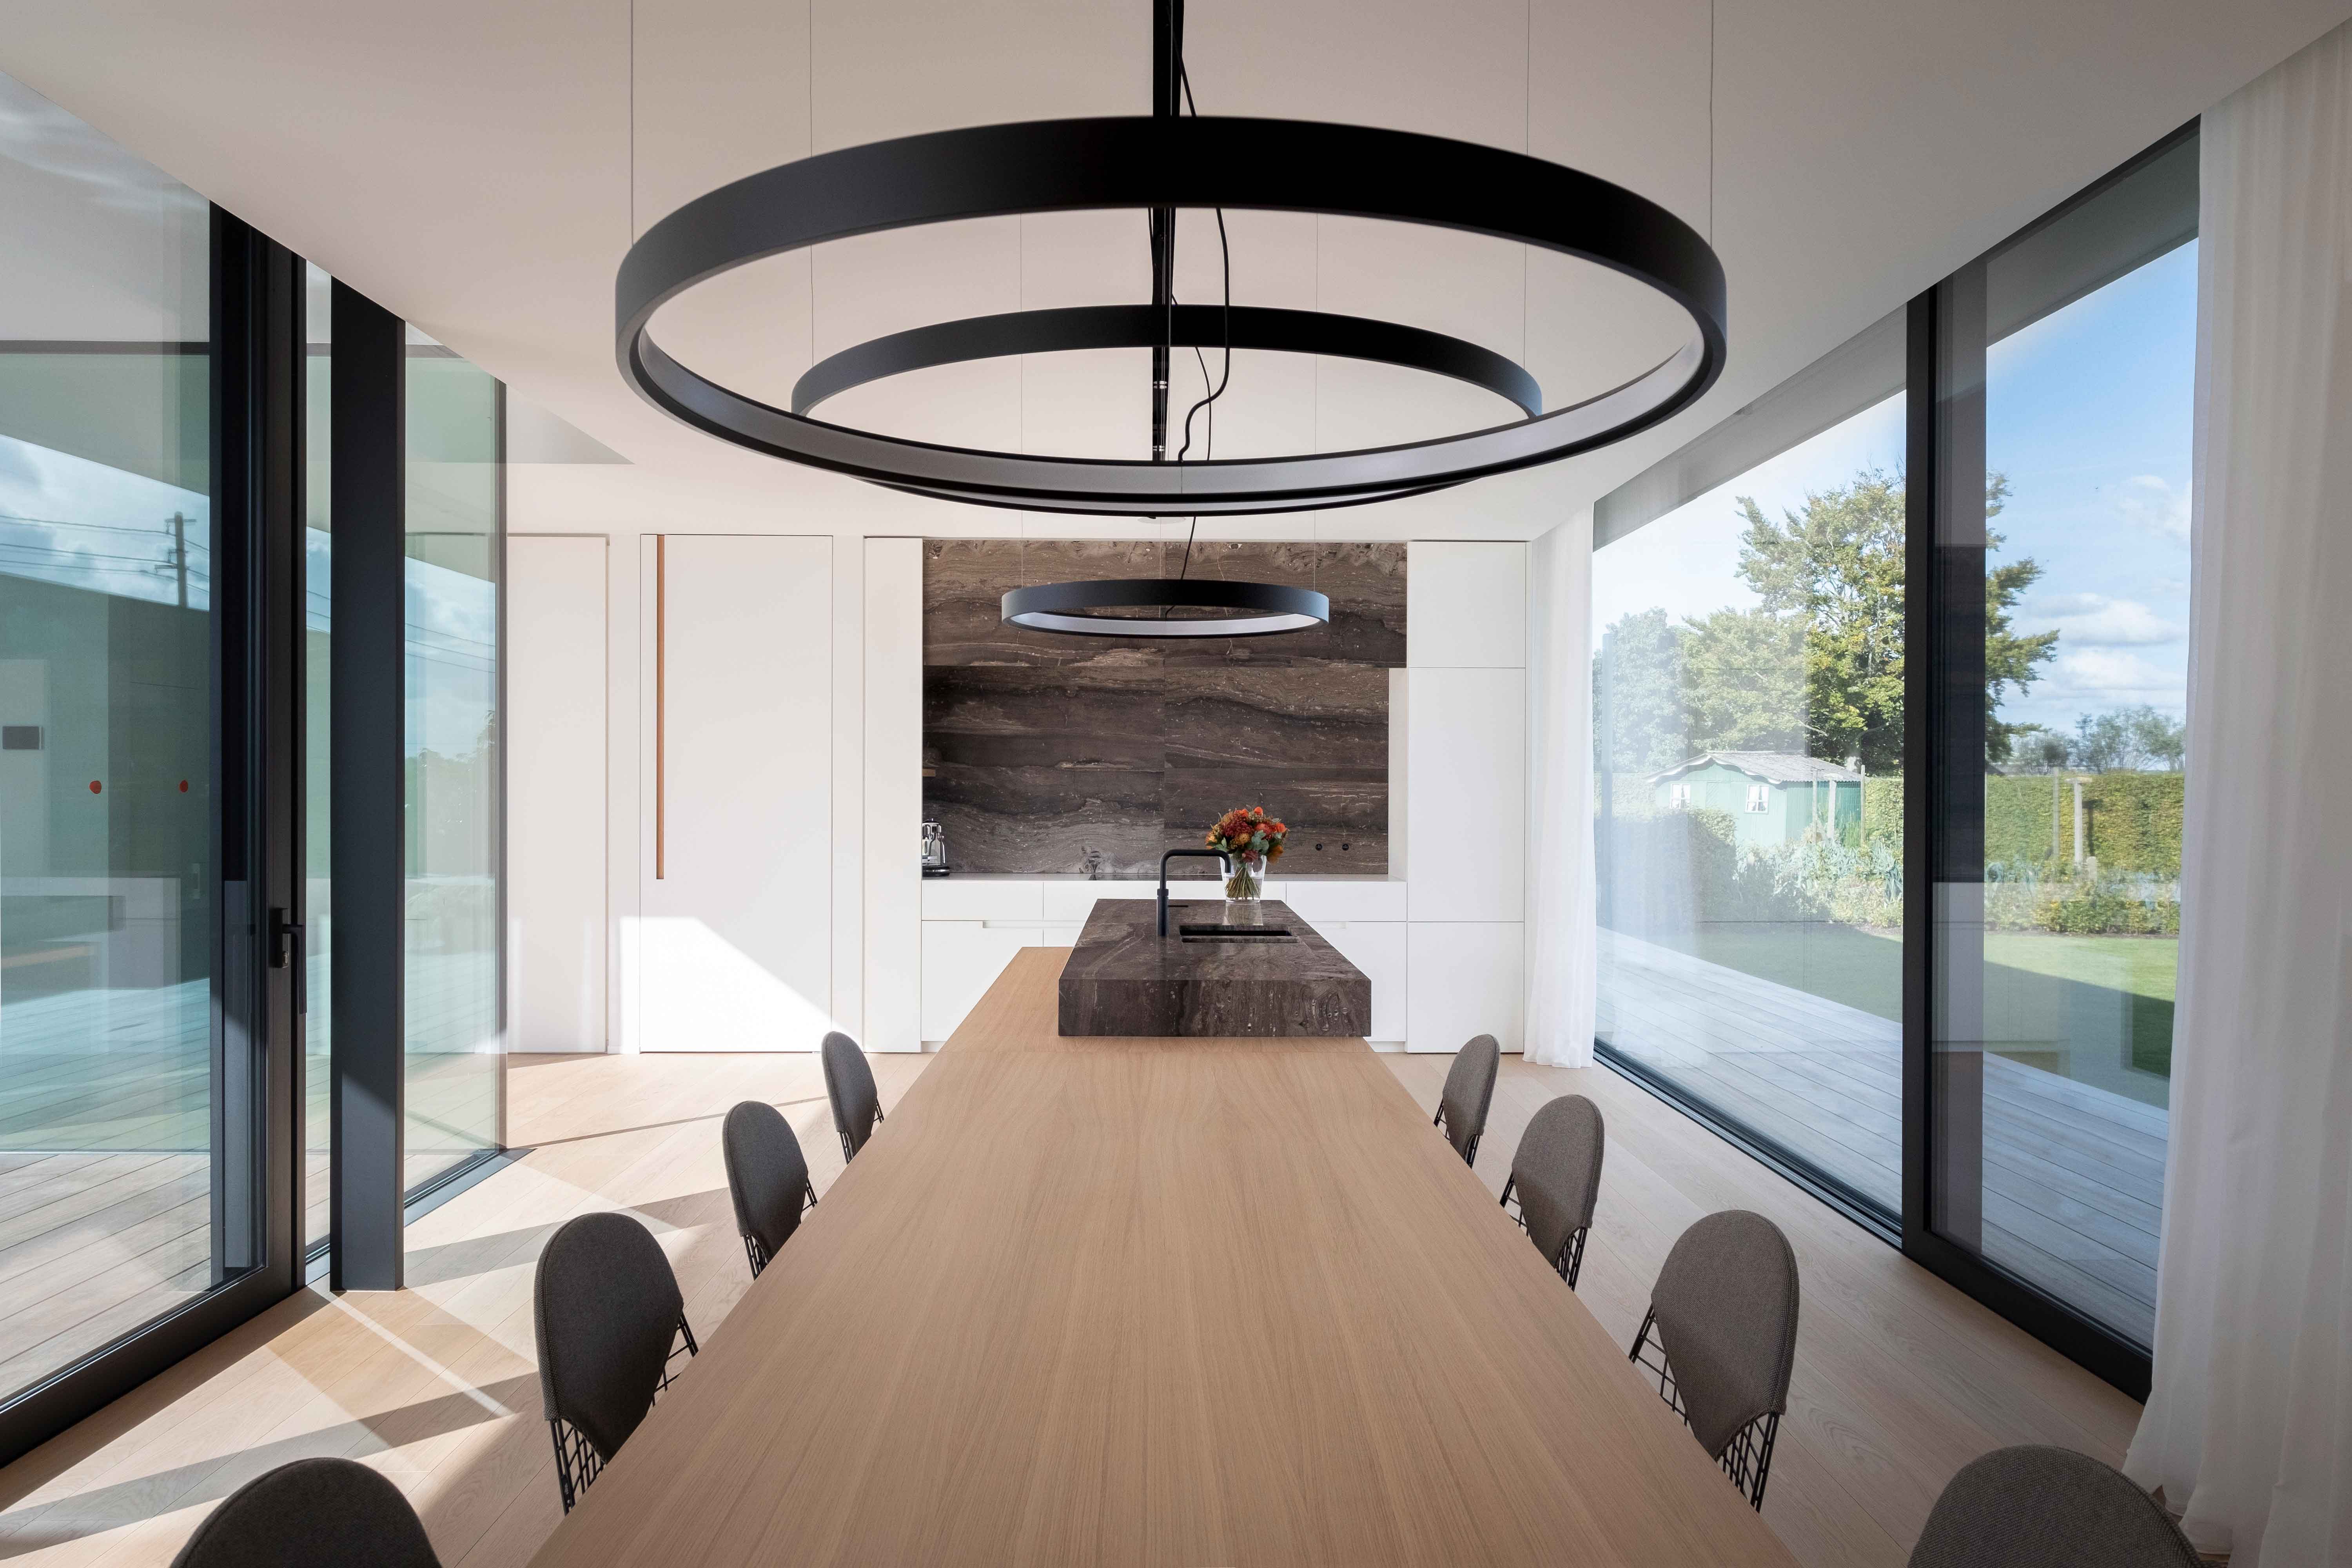 moderne open keuken met grote ramen met zwarte aluminium profielen